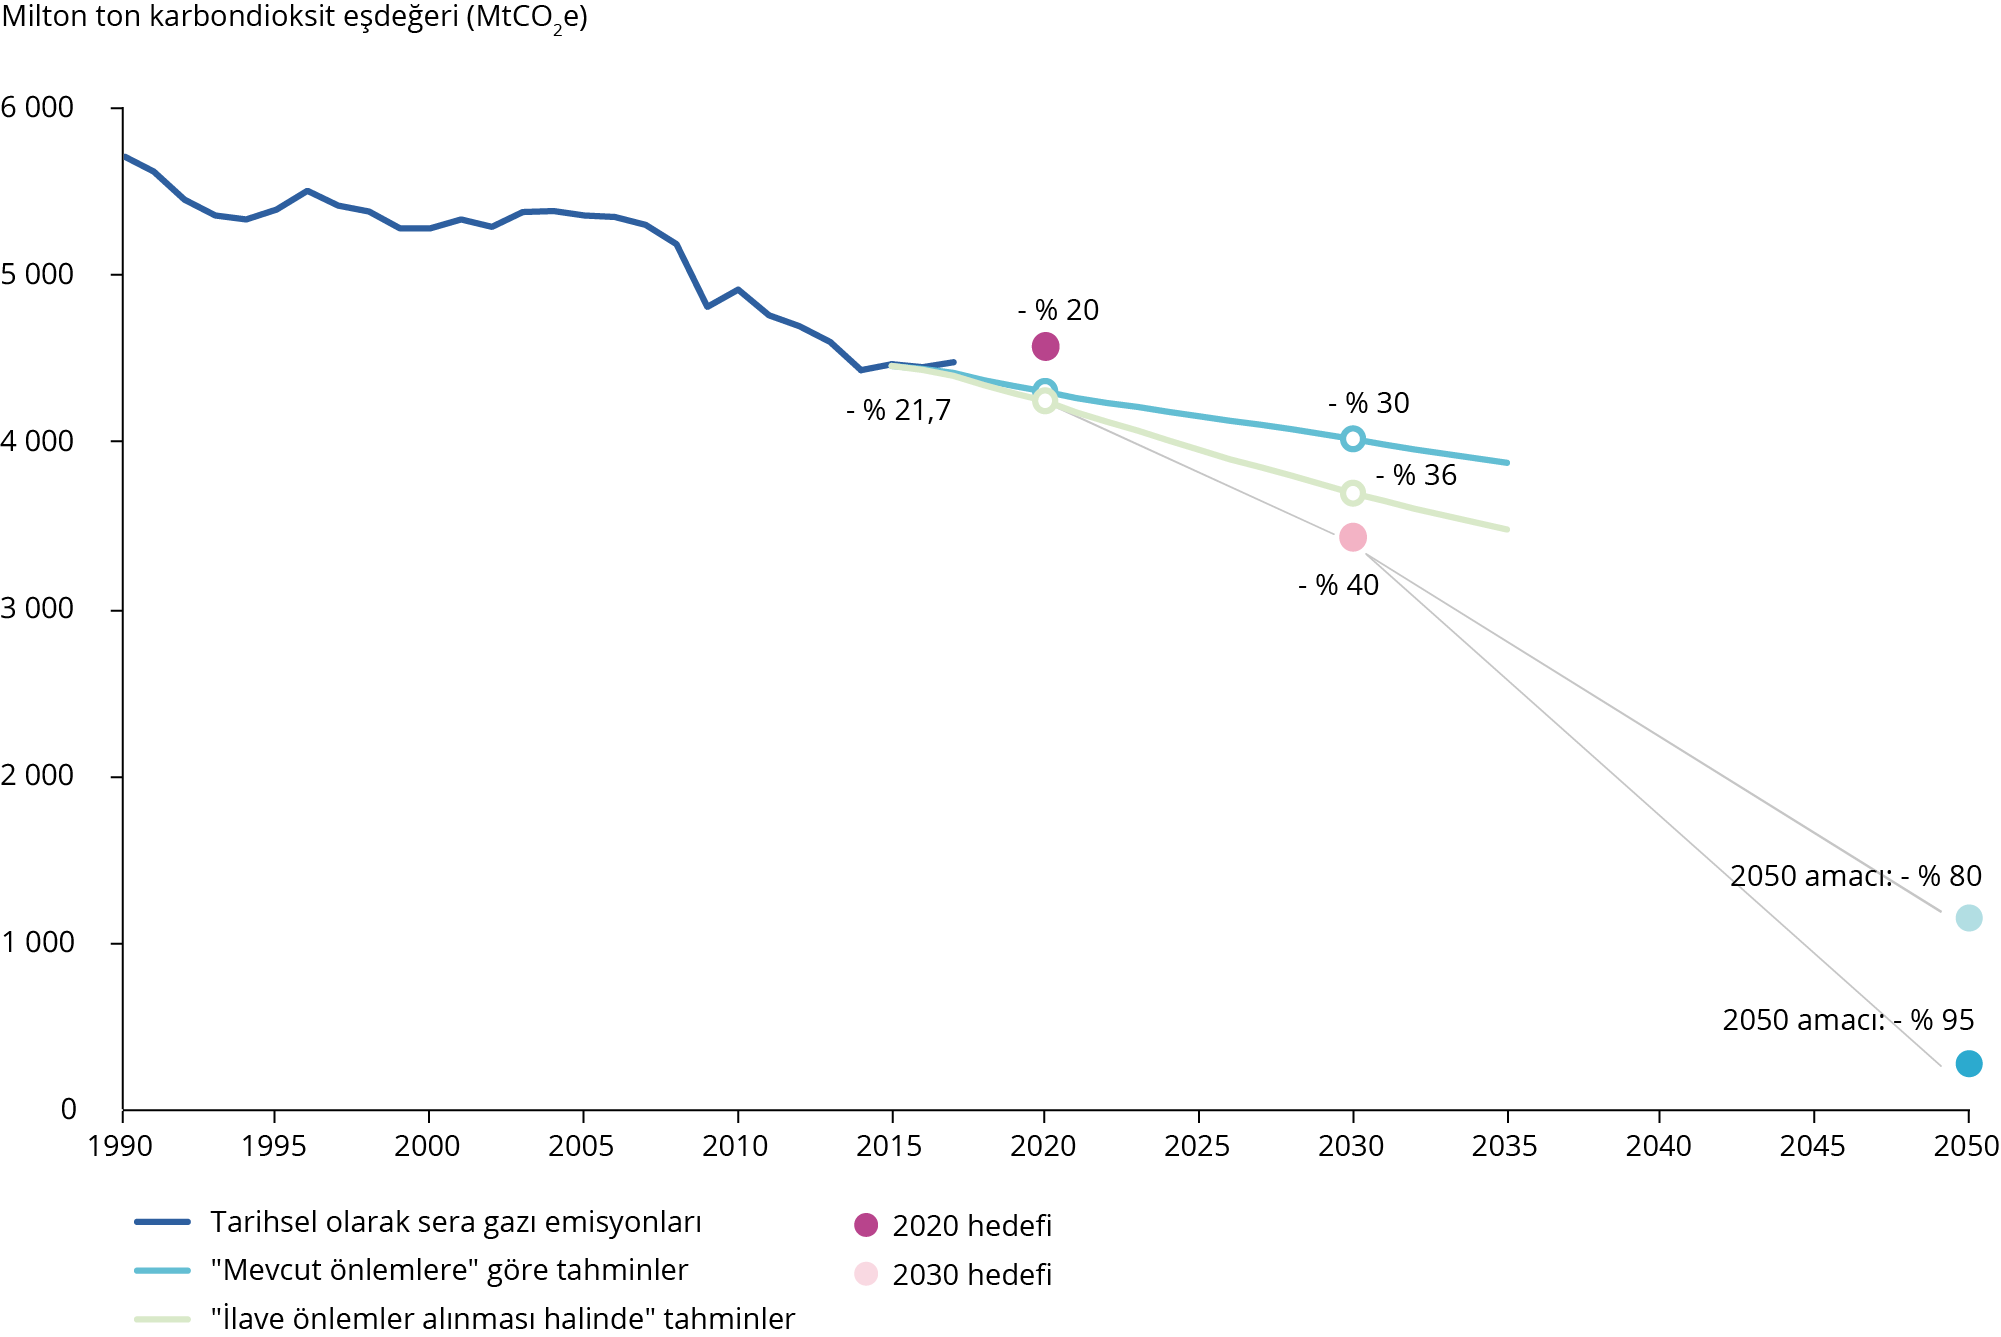 AB-28 için 1990-2050’de sera gazı emisyonu eğilimleri ve tahminleri